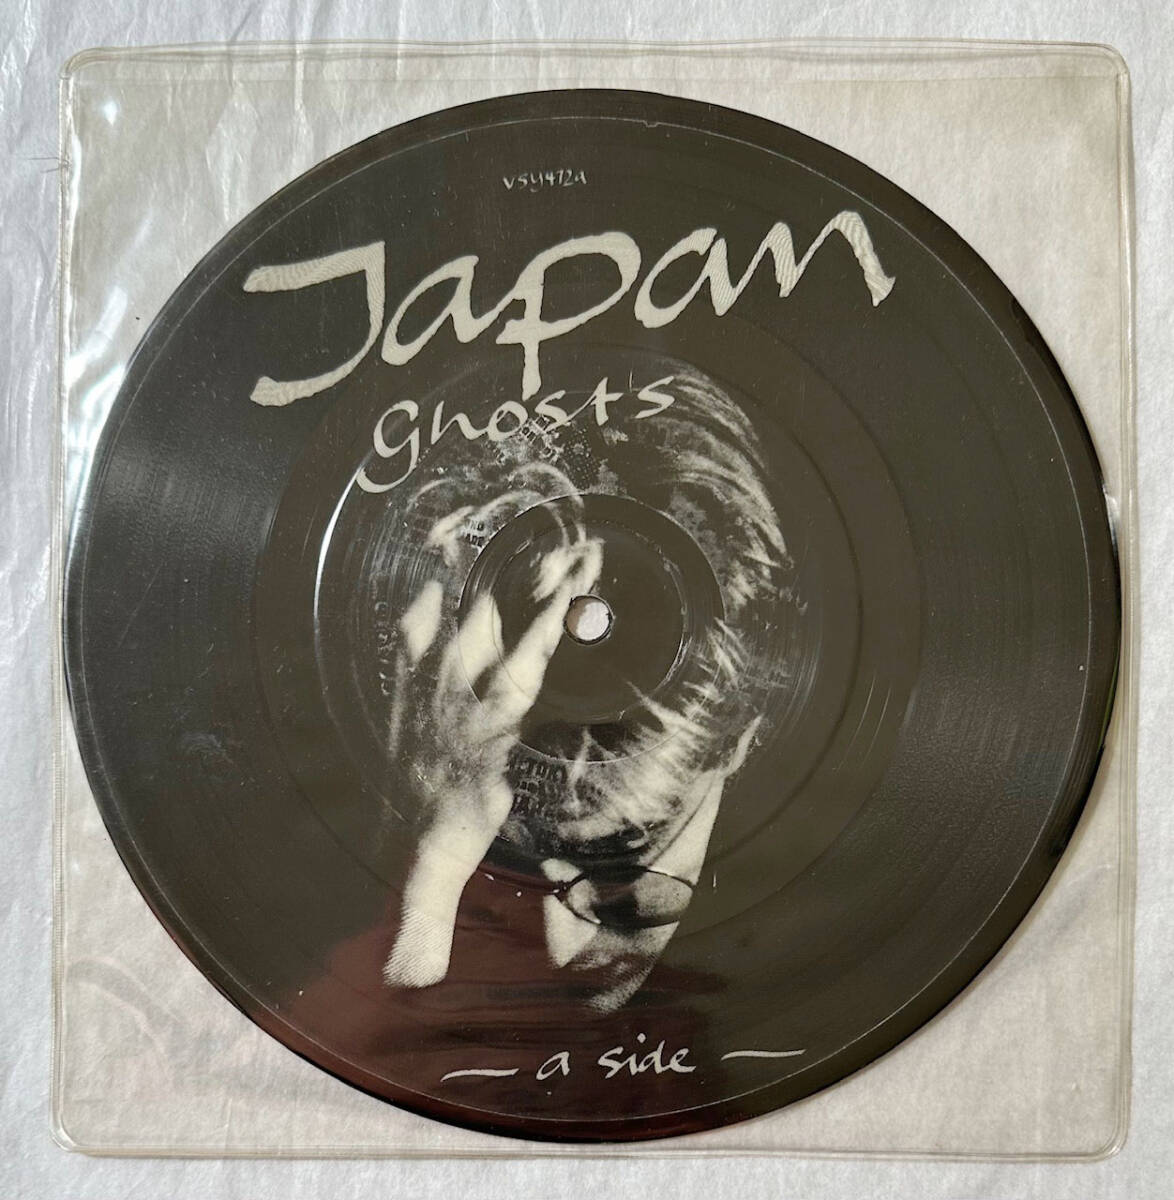 ■1982年 オリジナル UK盤 Japan - Ghosts 7”EP 限定 ピクチャーディスク VSY472 Virgin_画像3